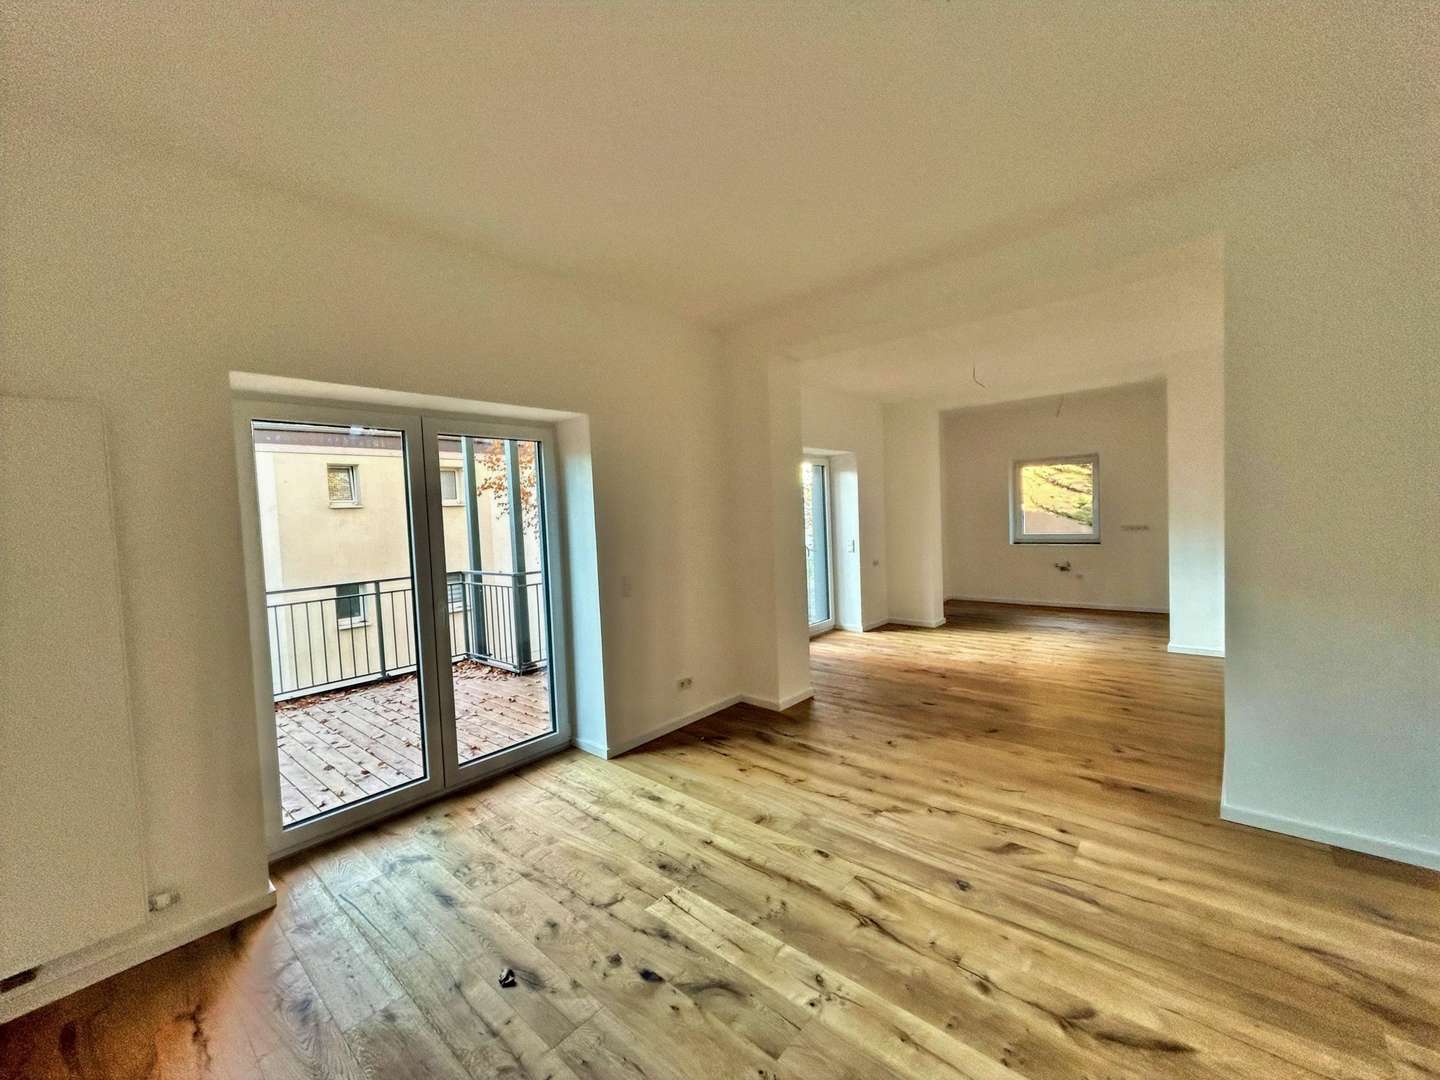 Wohn-, Ess- und Küchenbereich - Etagenwohnung in 65189 Wiesbaden mit 104m² kaufen